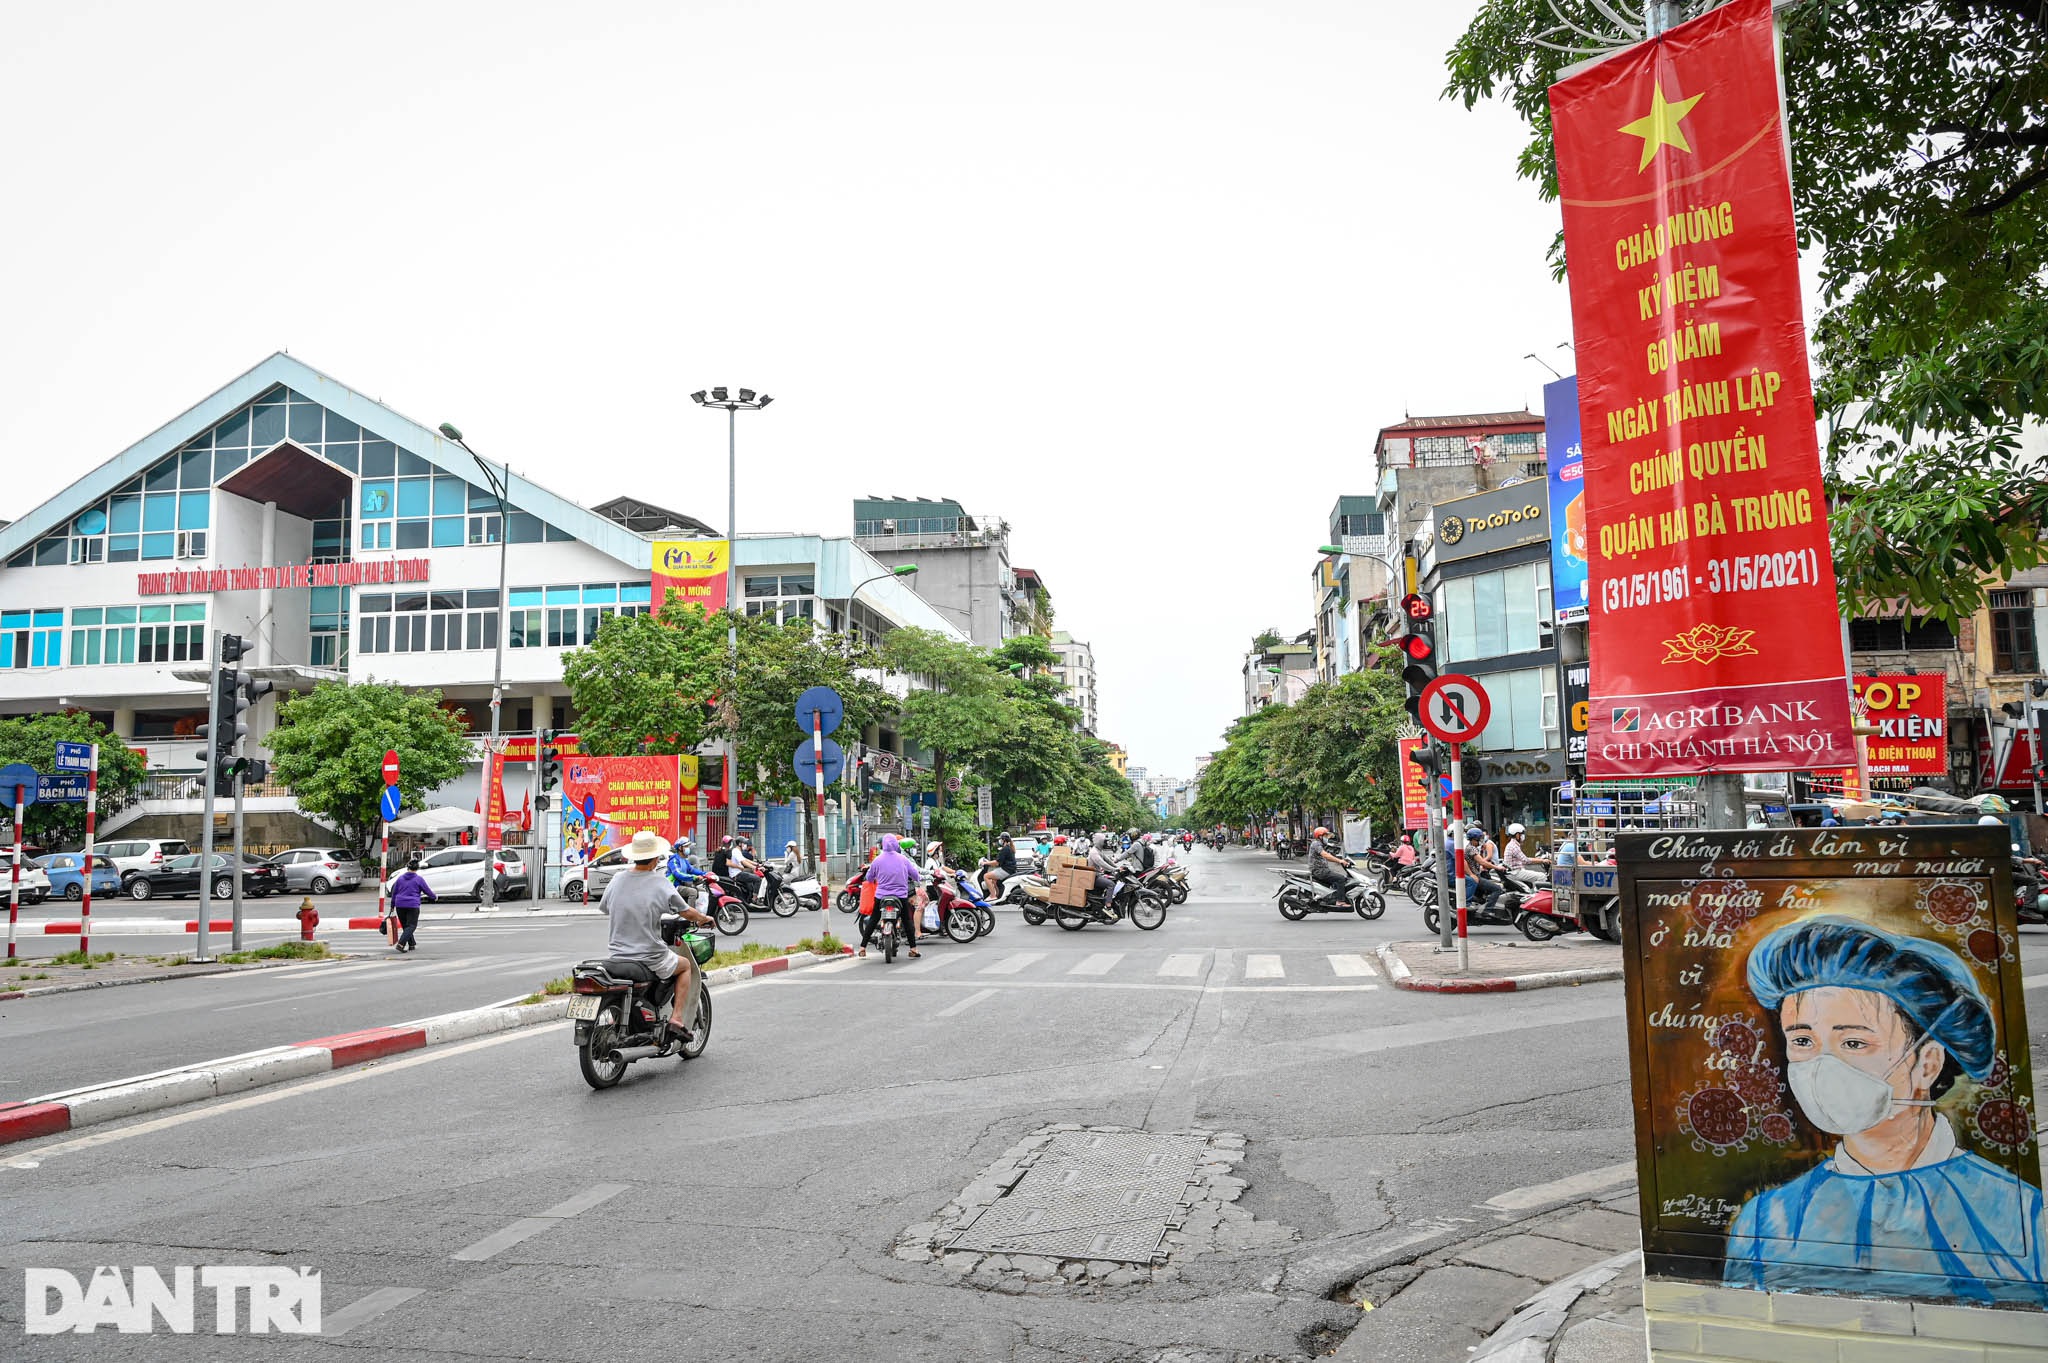 Ấn tượng những bốt điện chống dịch trên đường phố Hà Nội - 1